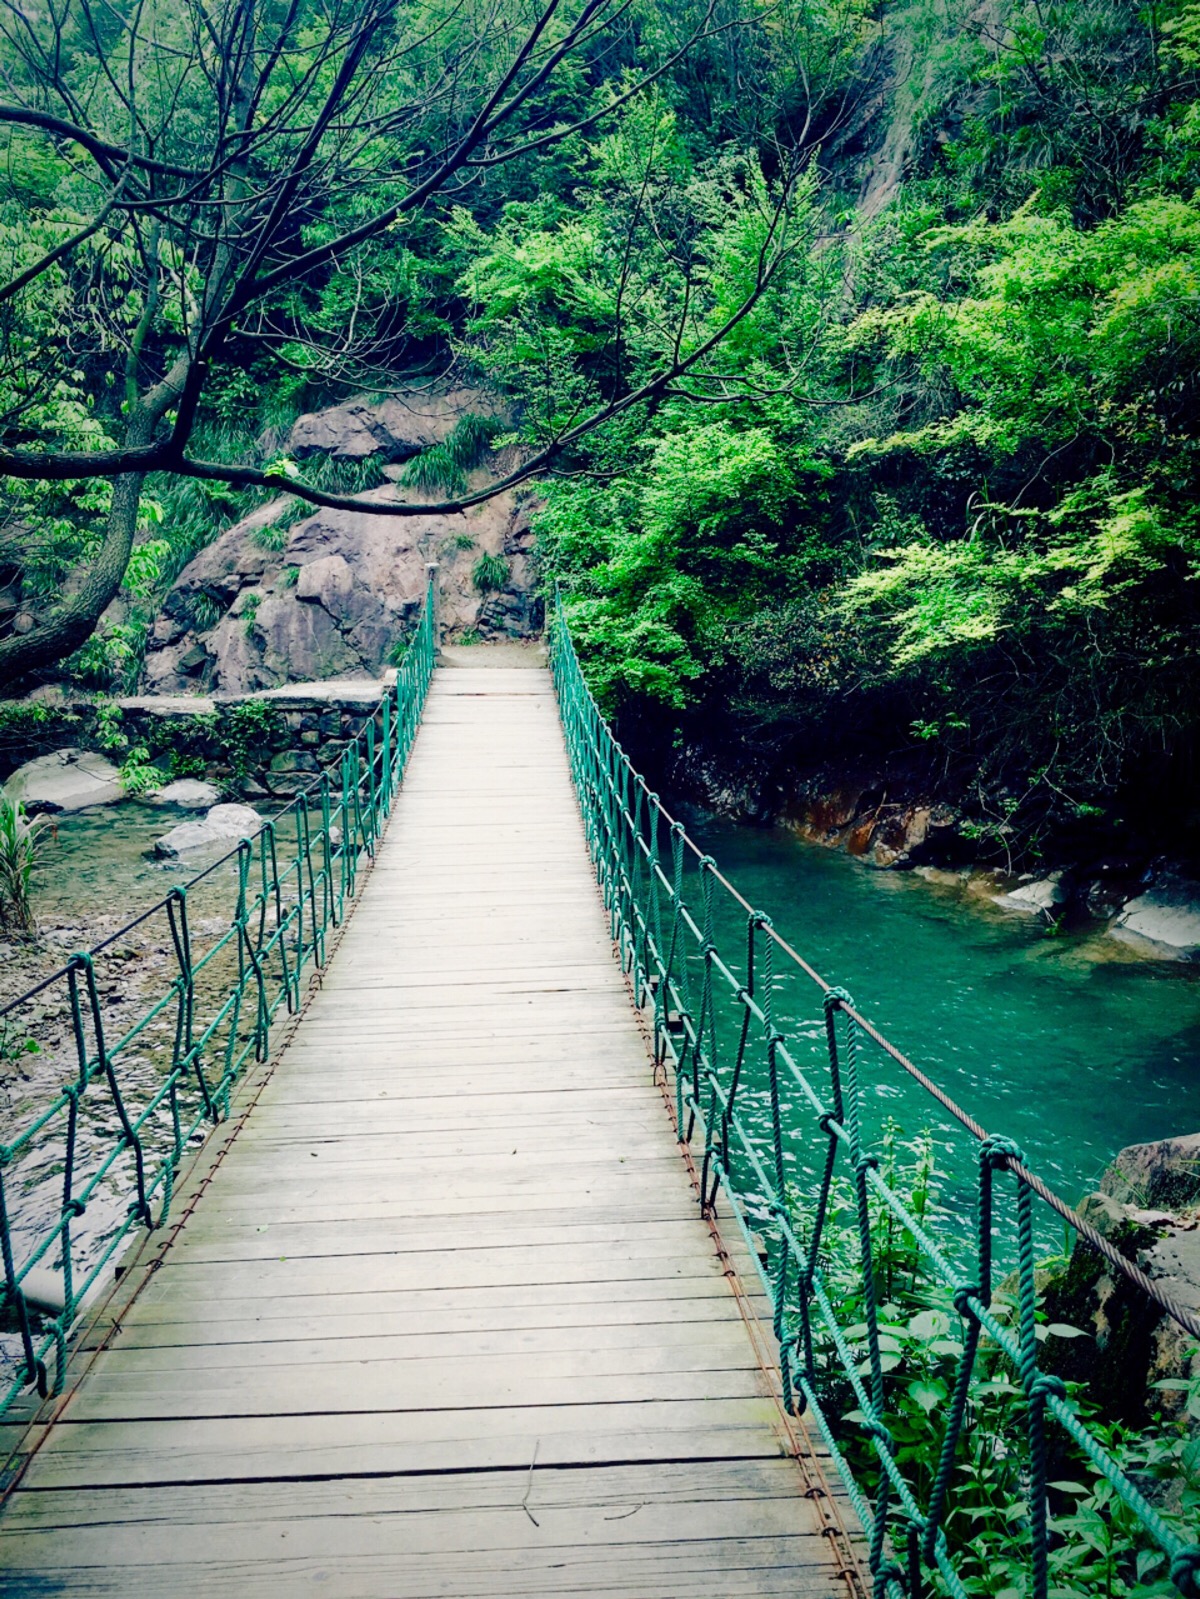 遂宁西山森林公园吊桥图片